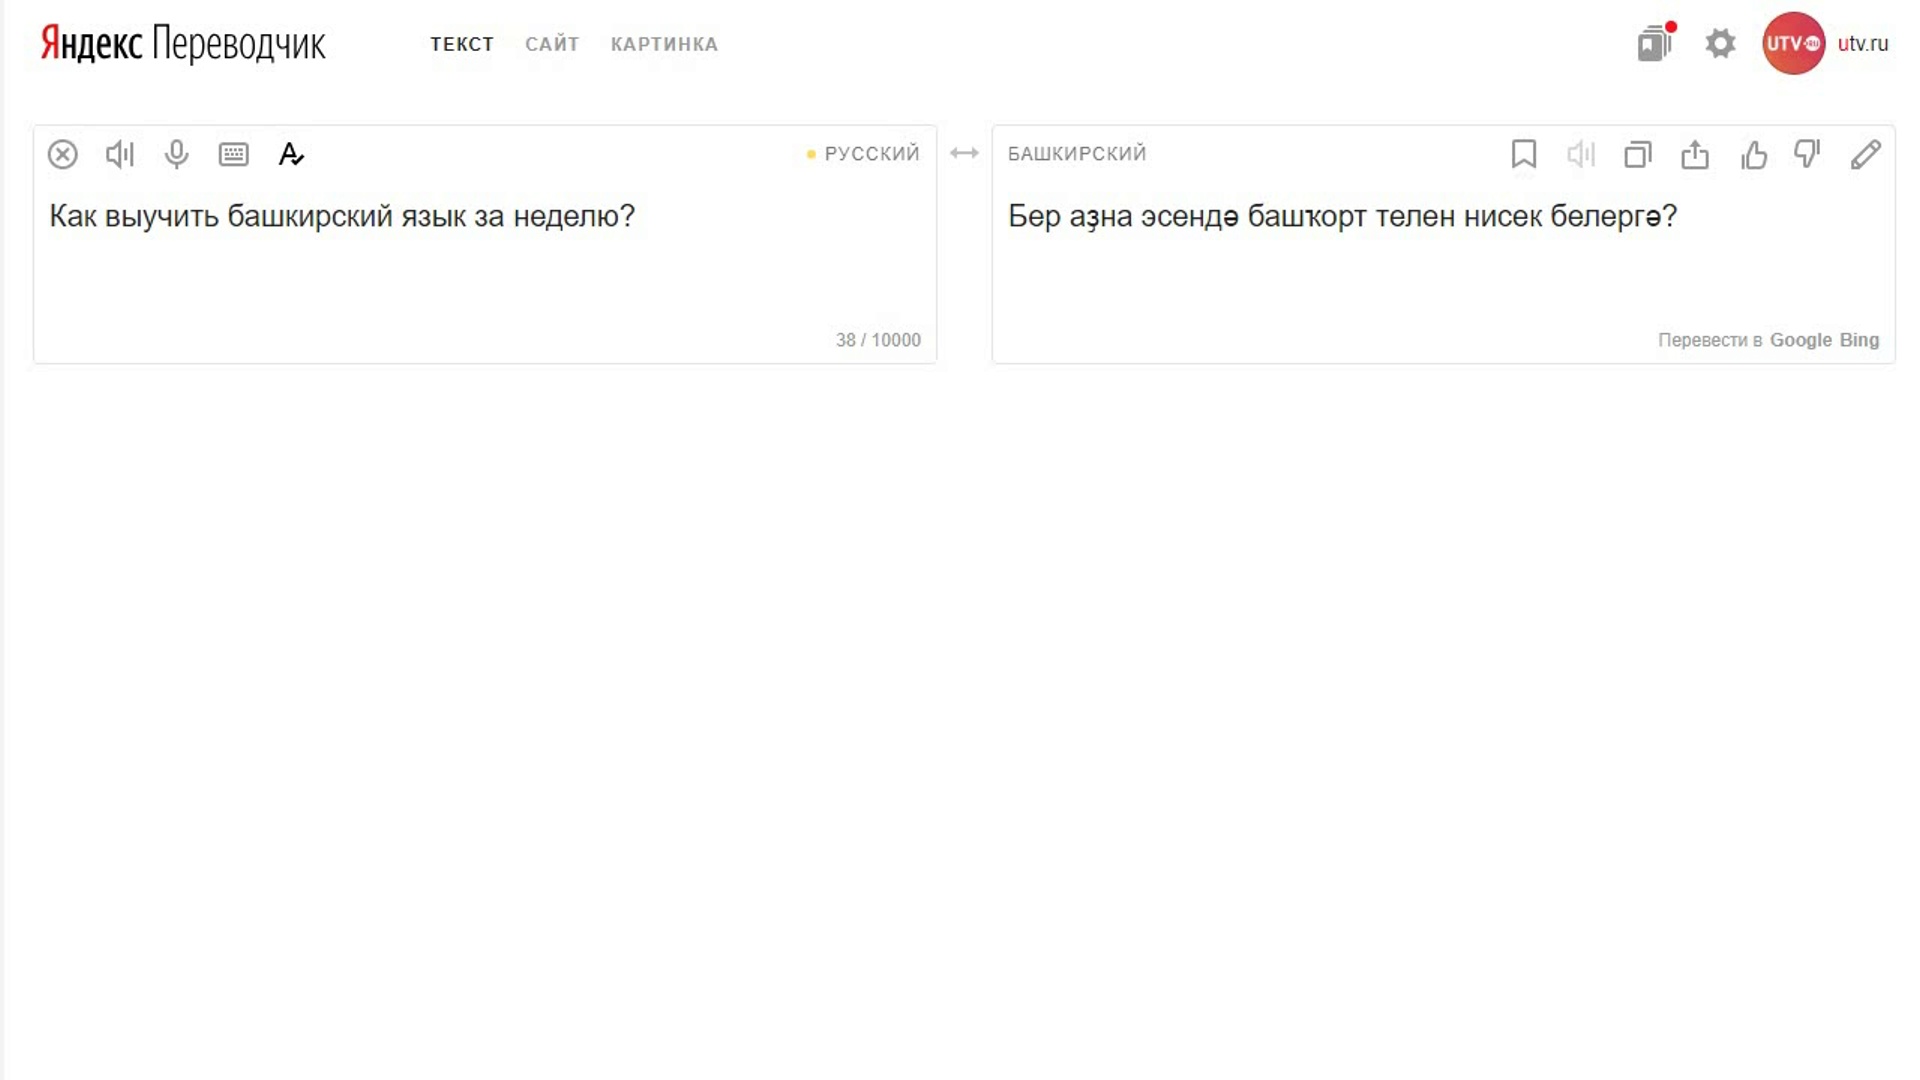 Переводчик с армянского на русский по фото онлайн бесплатно